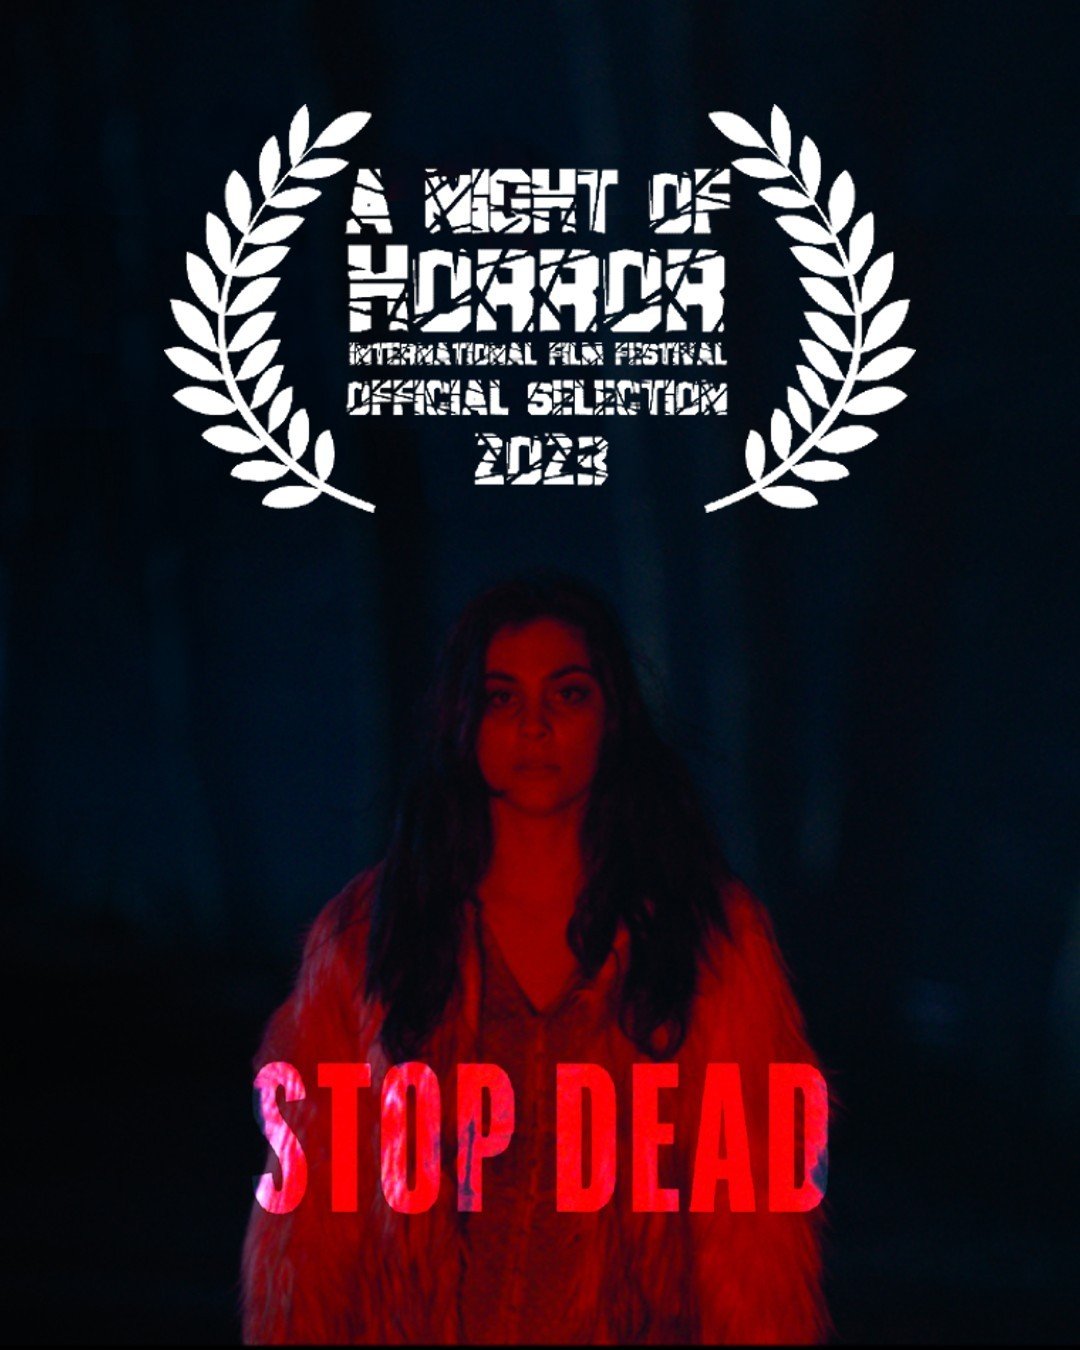 16. A Night of Horror Internatinal Film Festival.jpg